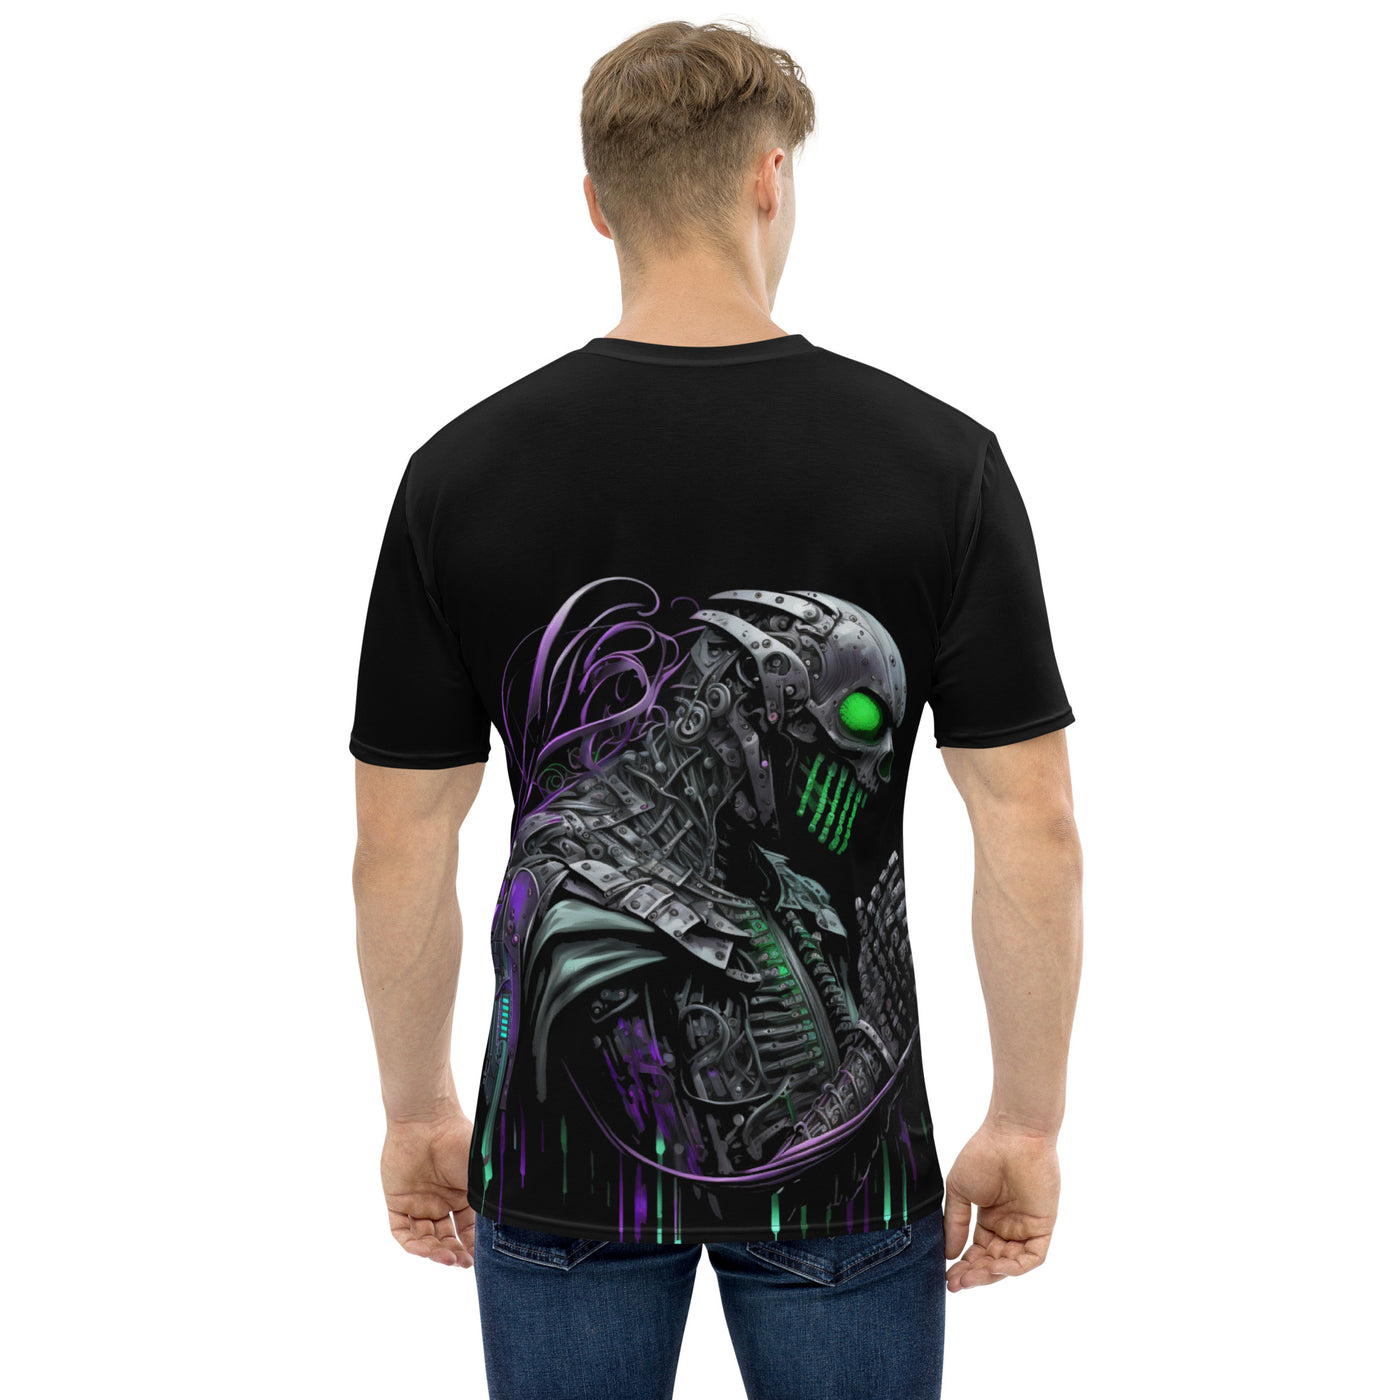 Cyberware assassin v62 - Men's t-shirt